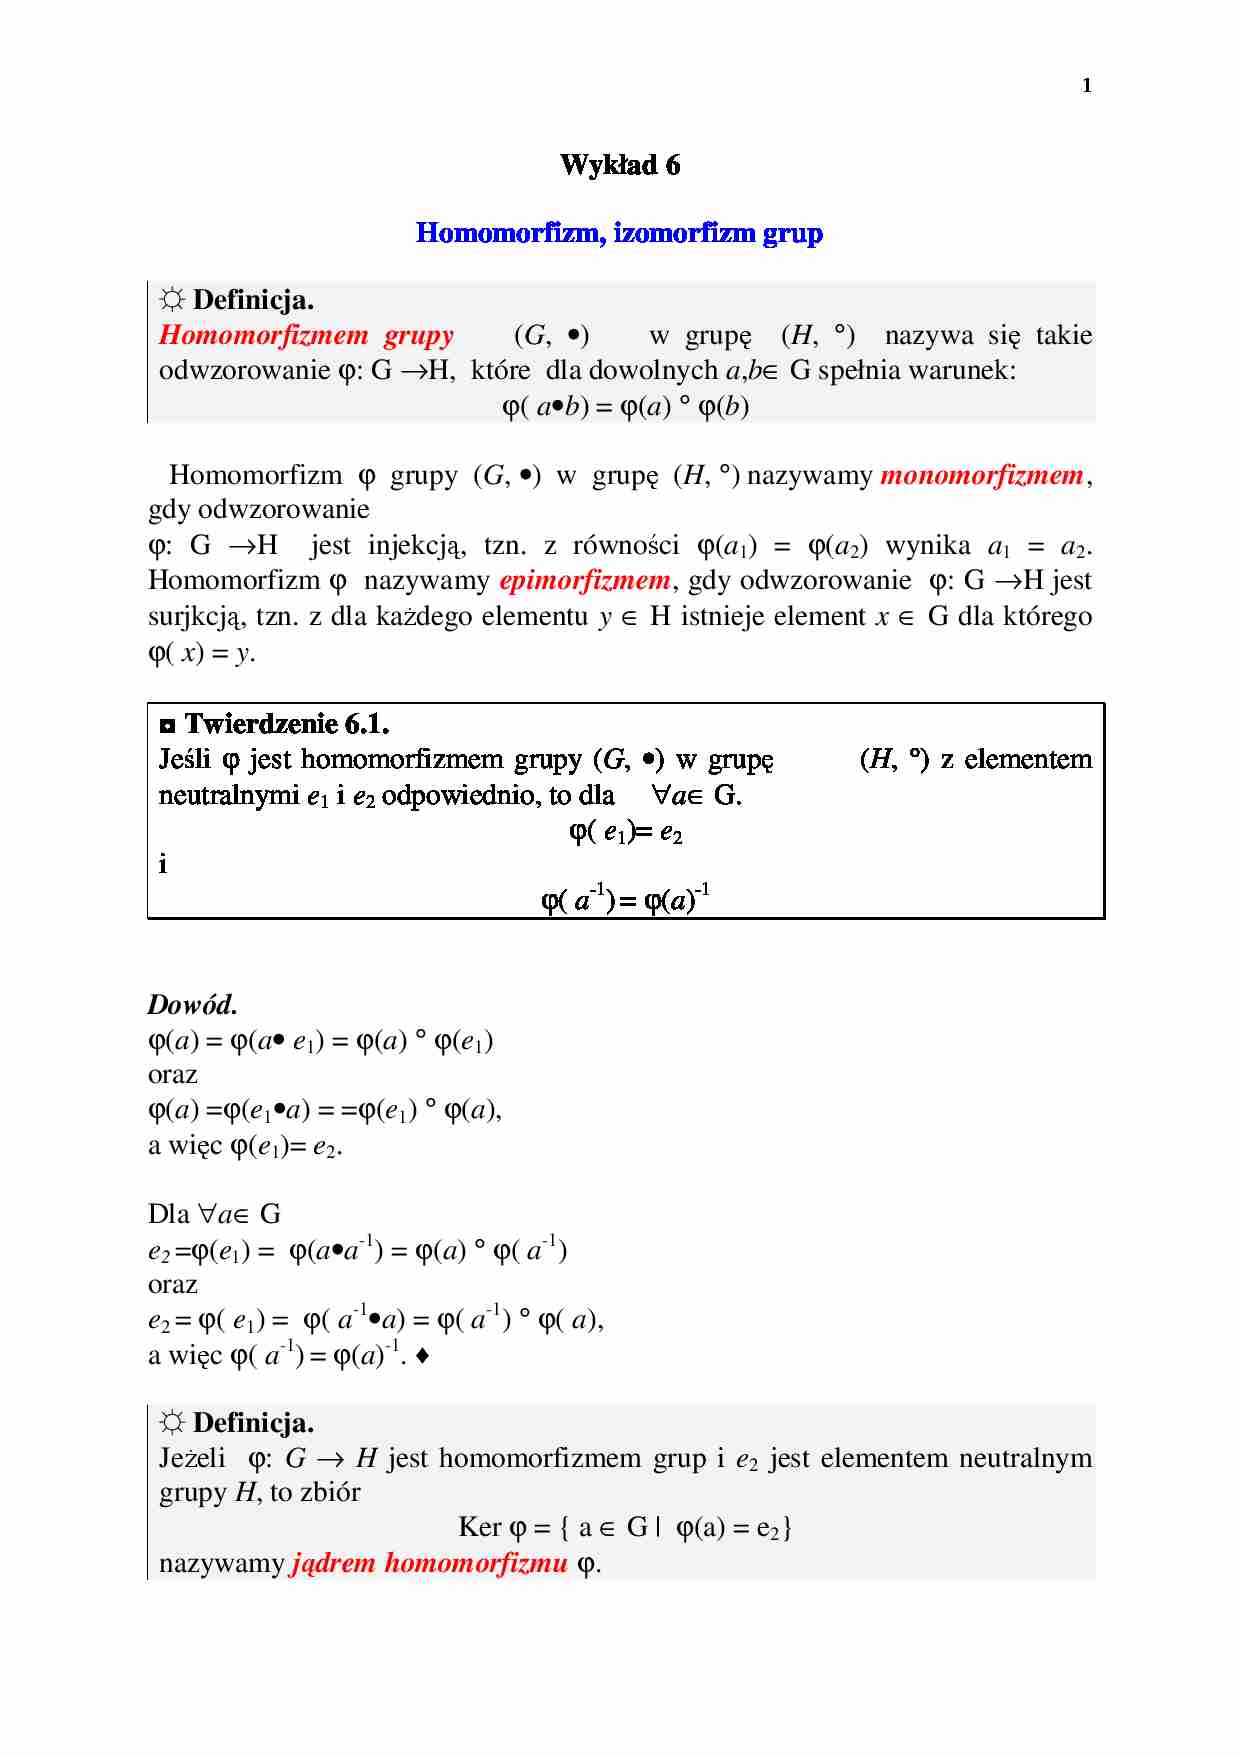 Algebra, homomorfizm - wykład 6 - strona 1